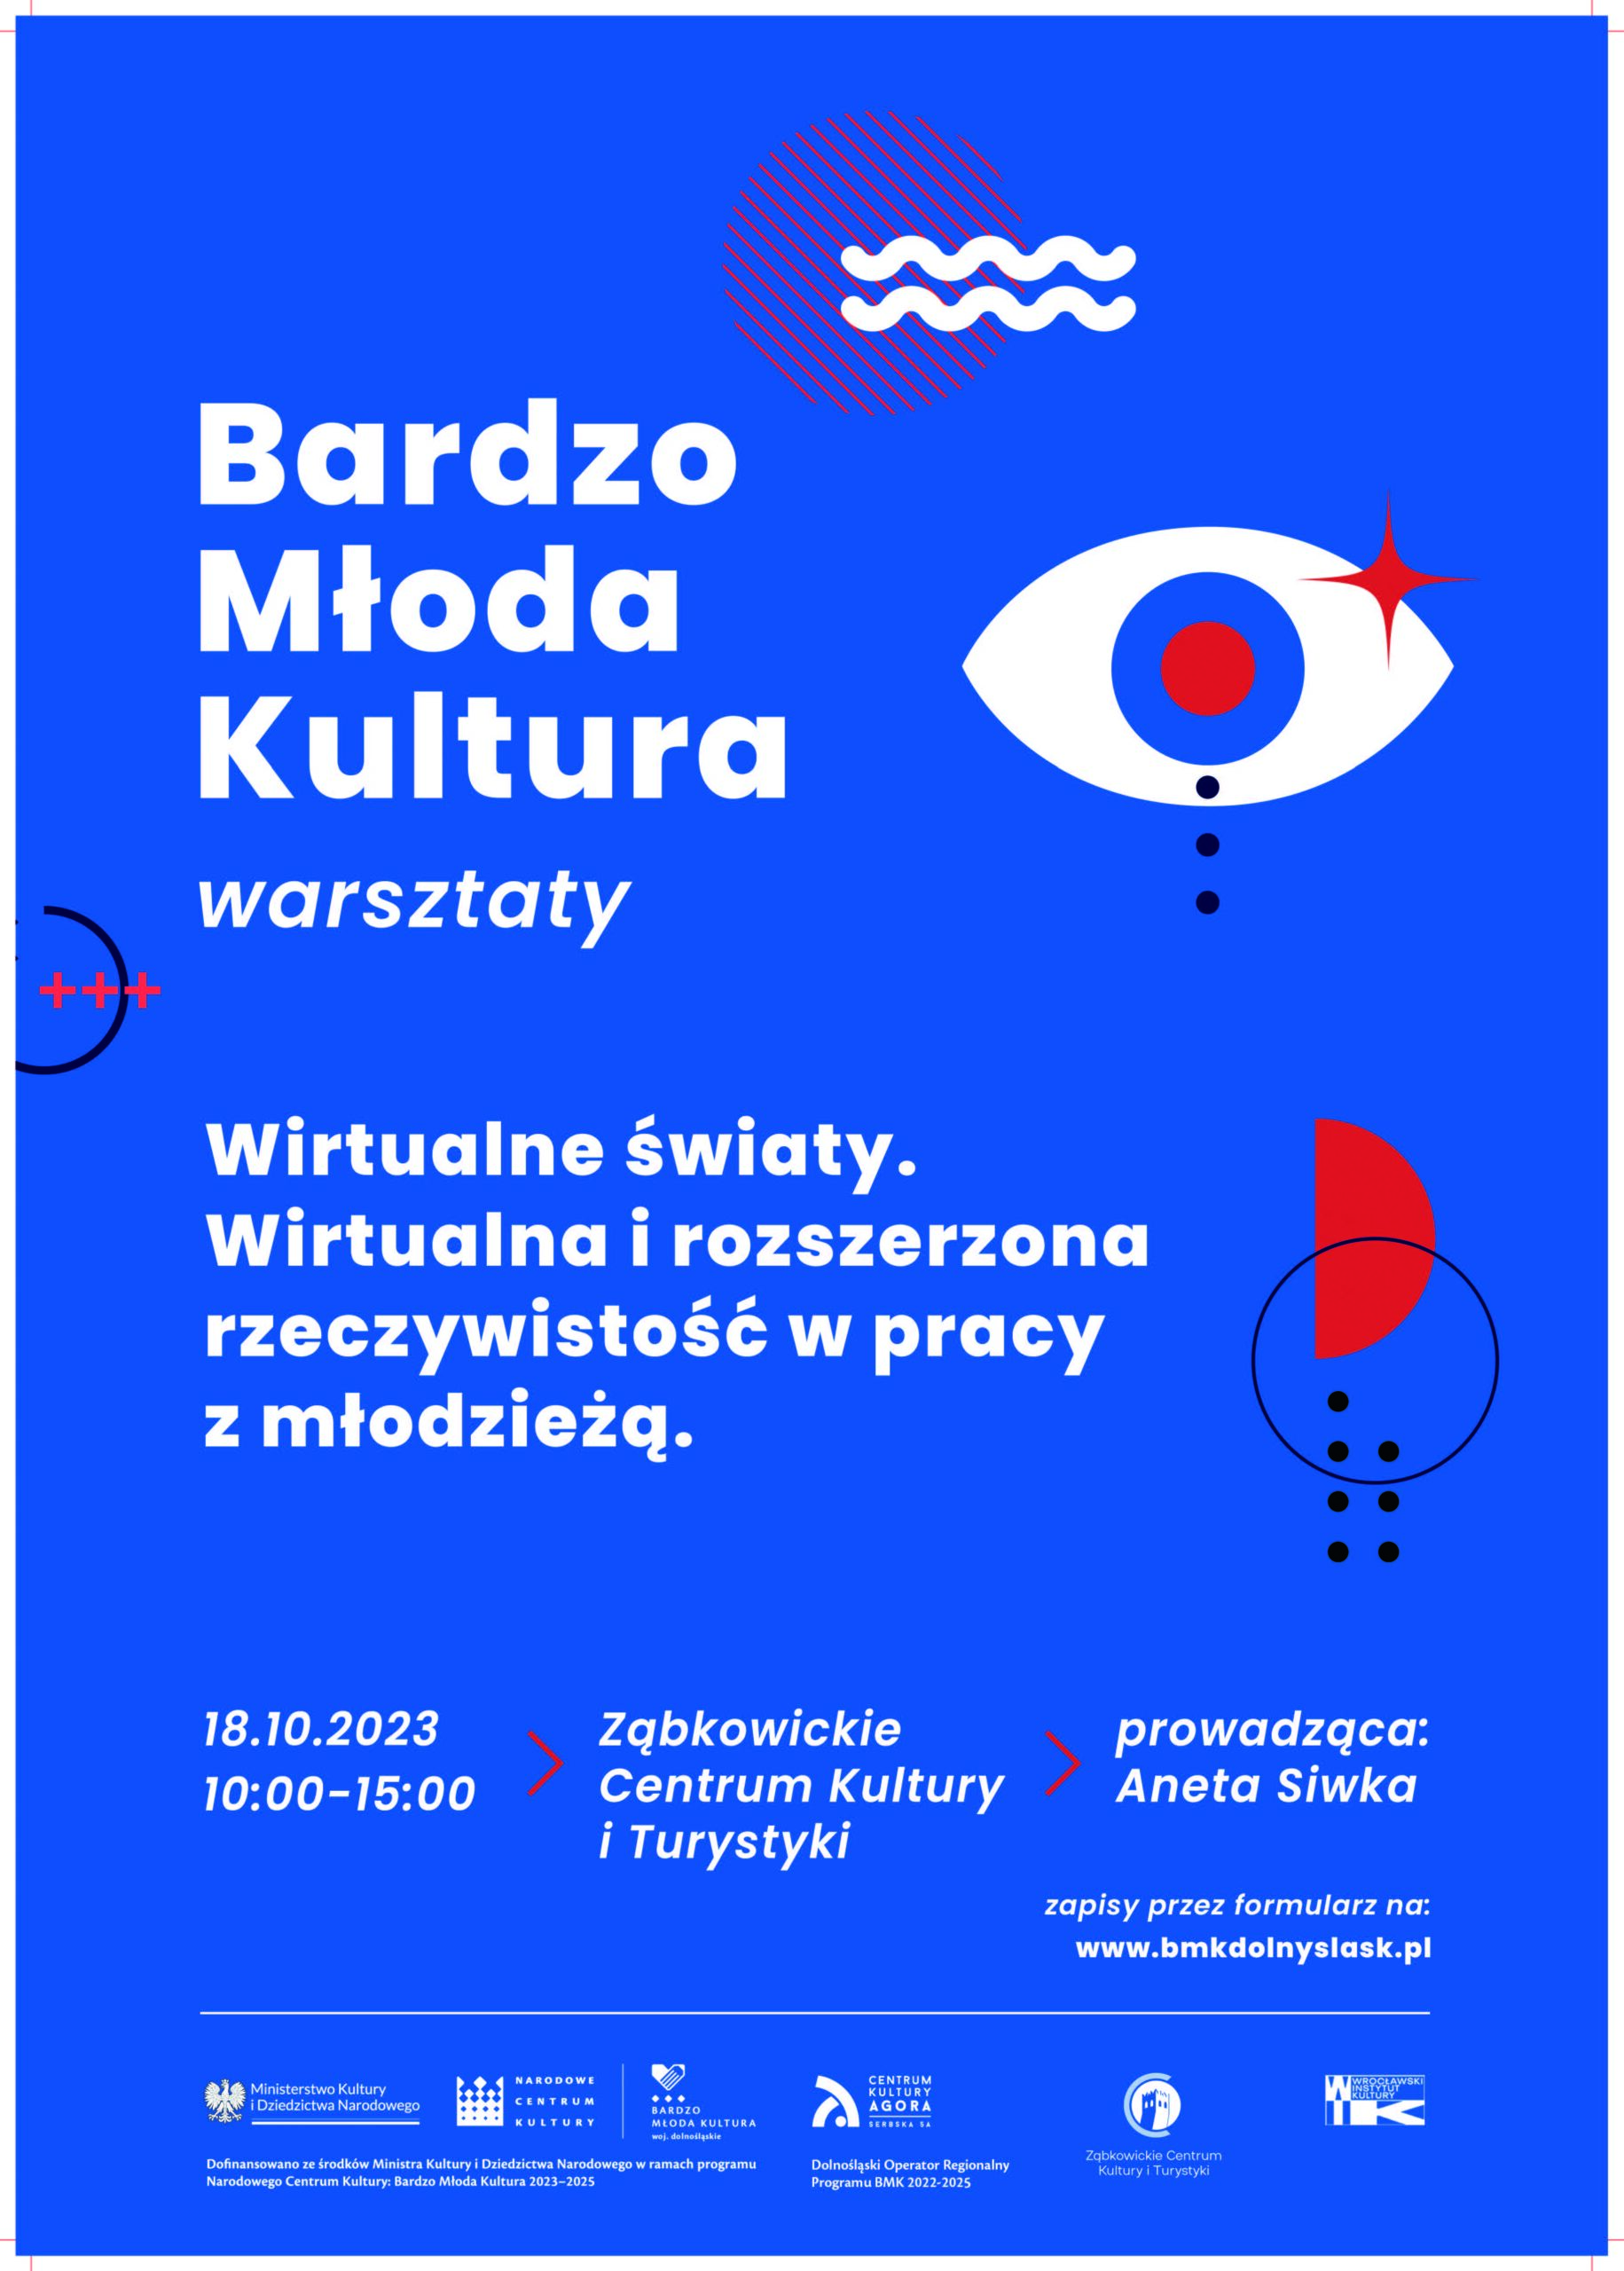 Plakat informacyjny o warsztatach Bardzo Młoda Kultura 18 października 2023 w Ząbkowickim Centrum Kultury i Turystyki, prowadzonych przez Anetę Siwkę. Na plakacie widnieją kolorowe kształty na niebieskim tle.